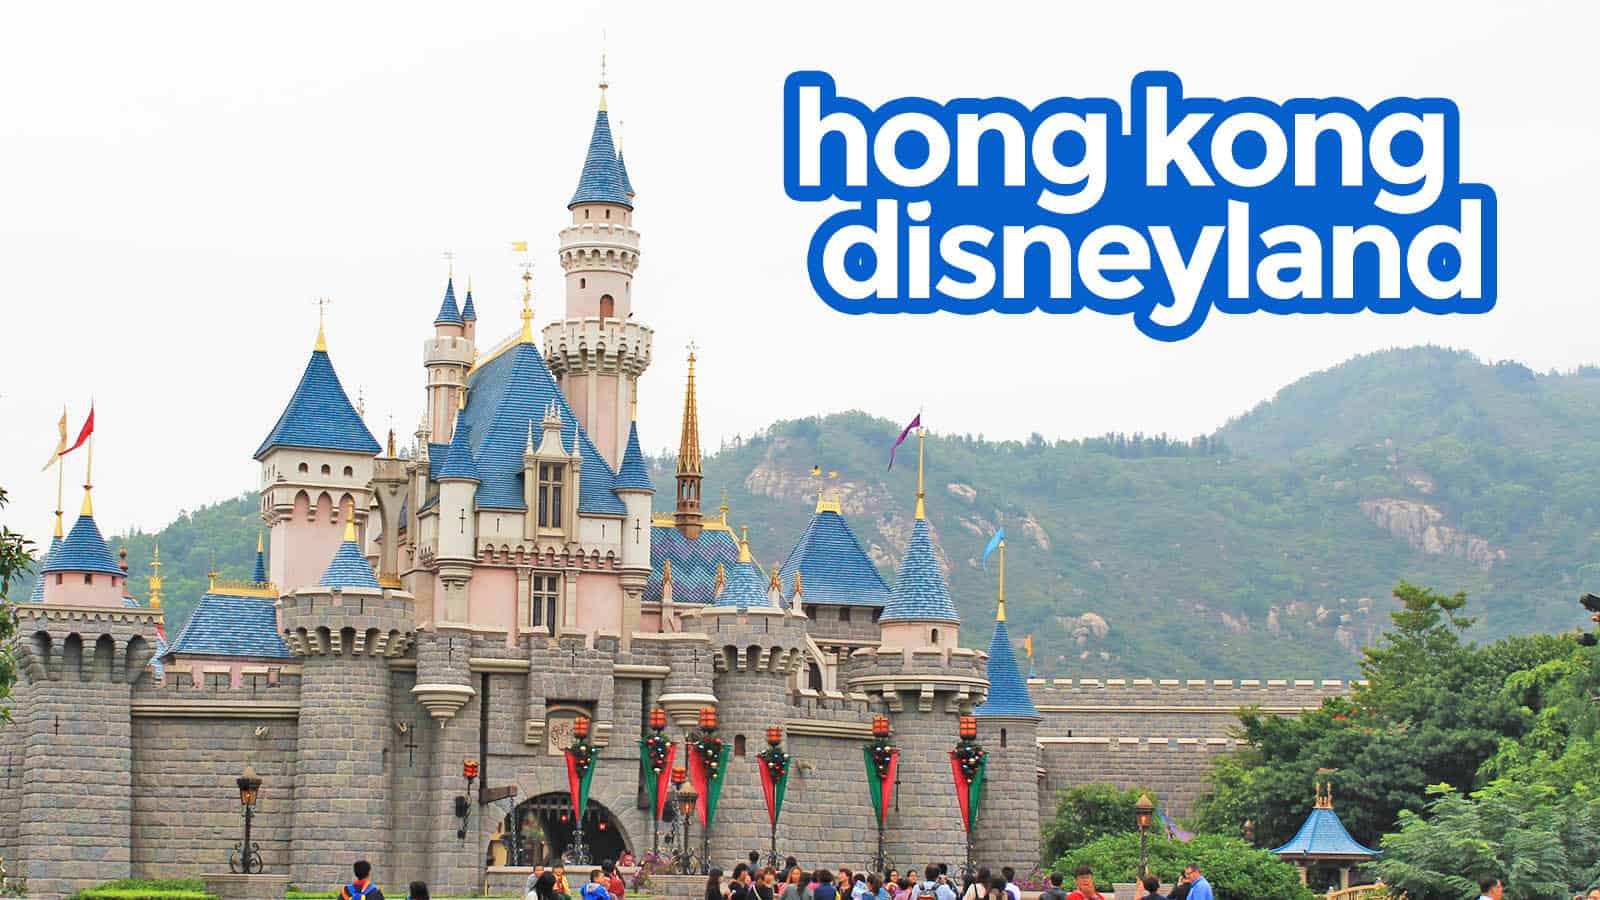 The Popular Hong Kong Disneyland and Many Interesting Shows